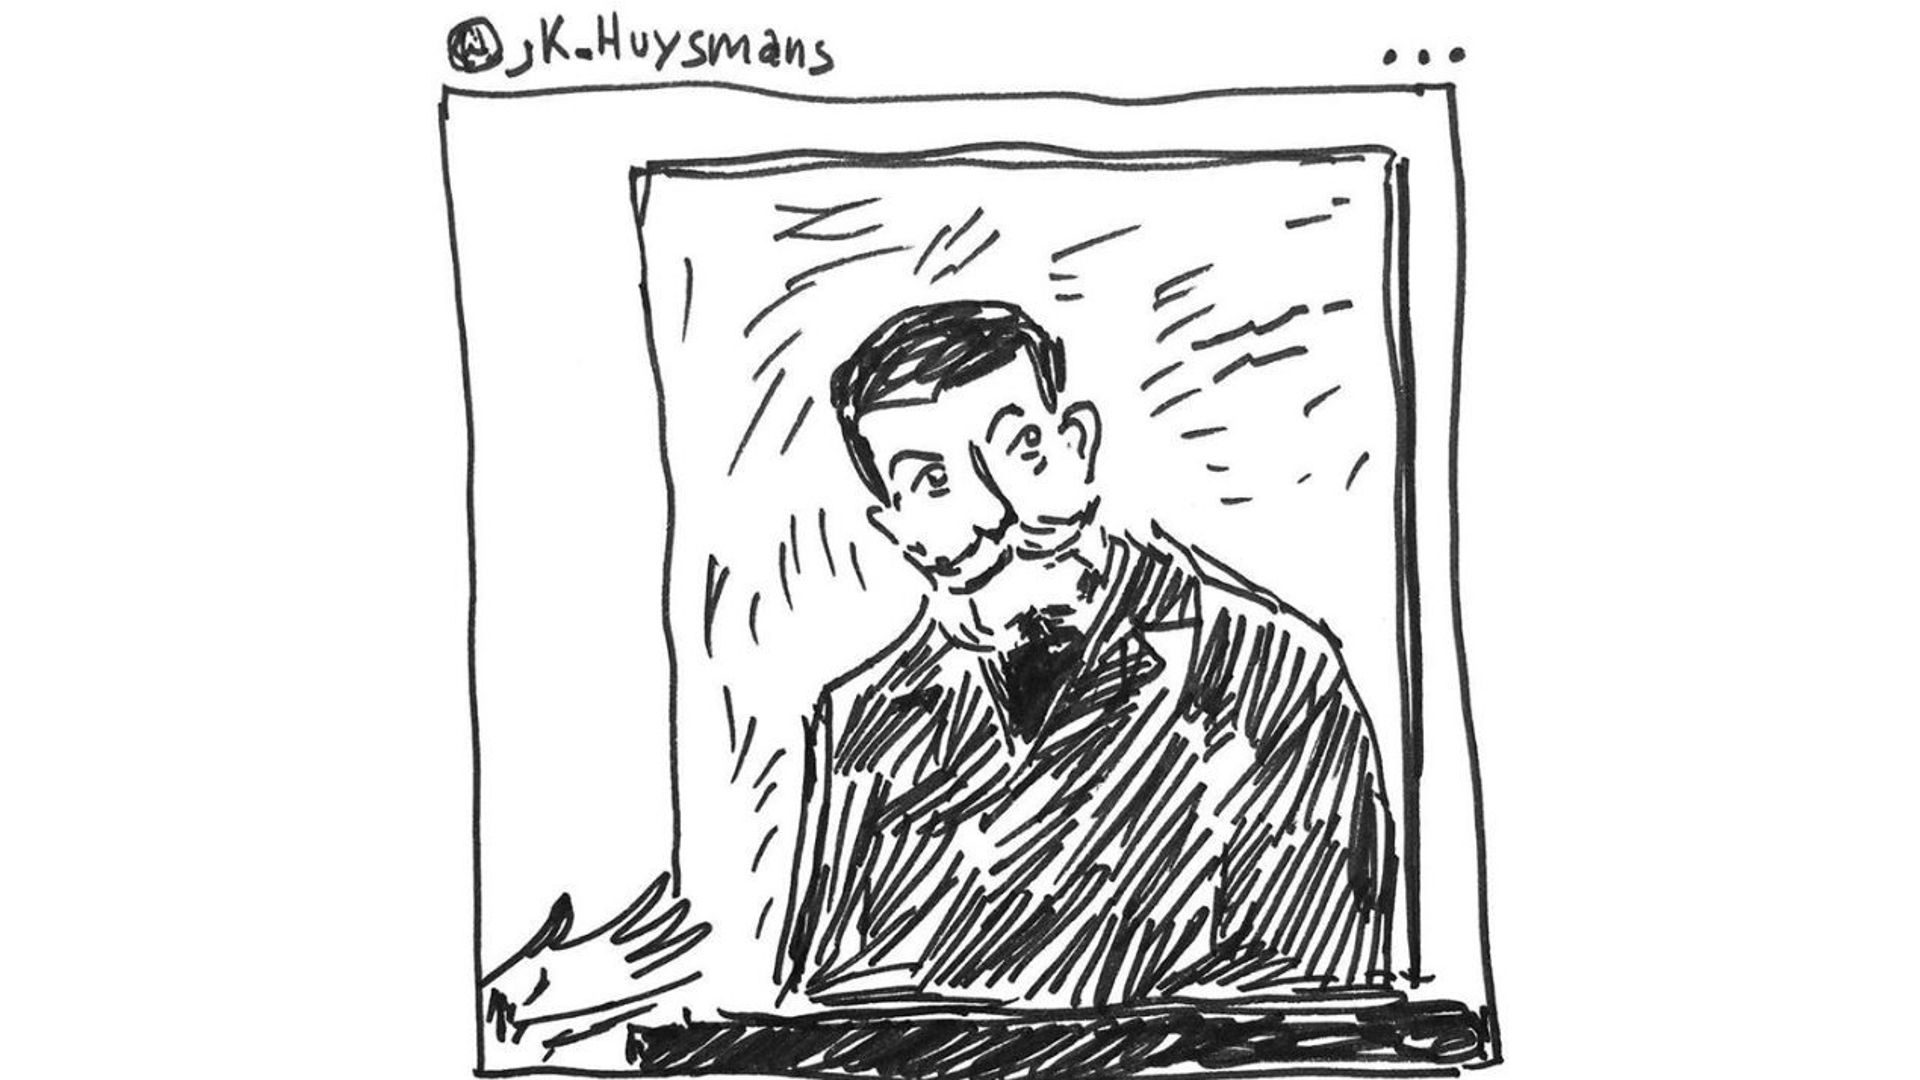 Le musée d'Orsay innove en invitant le dessinateur Jean-Philippe Delhomme comme "artiste en résidence" sur son compte Instagram.